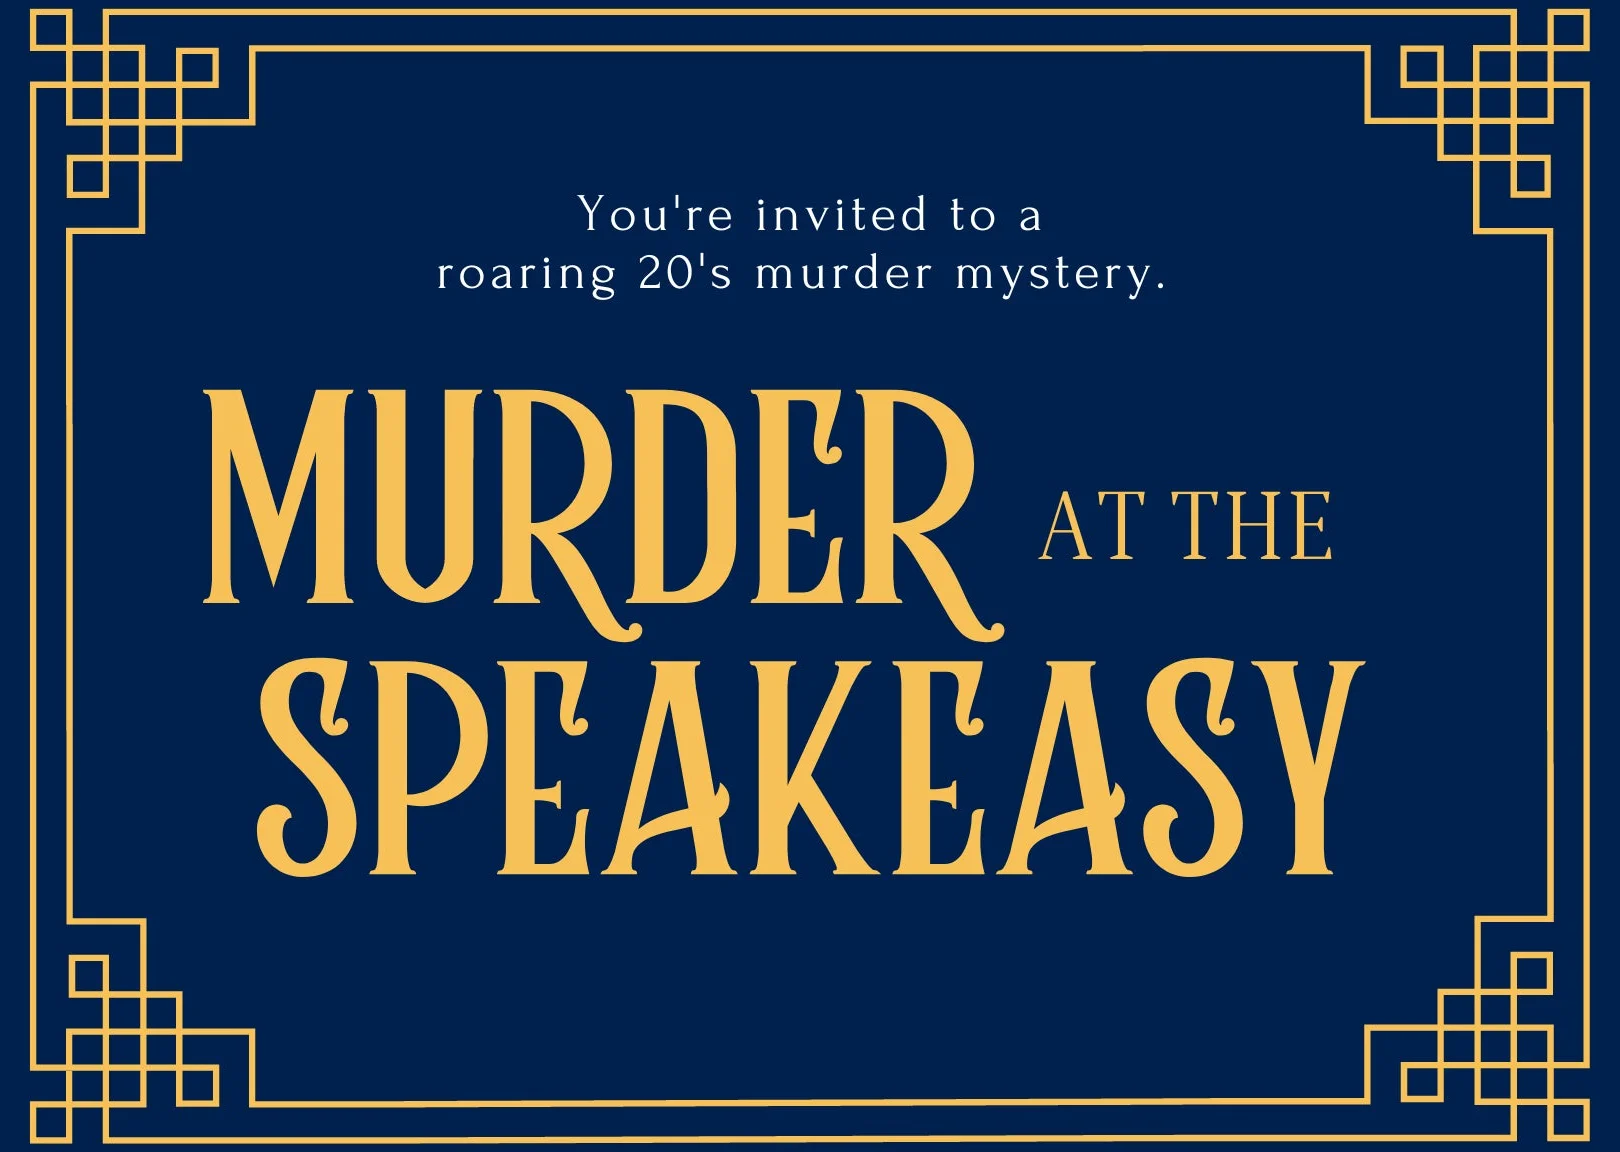 Murder at the Speakeasy